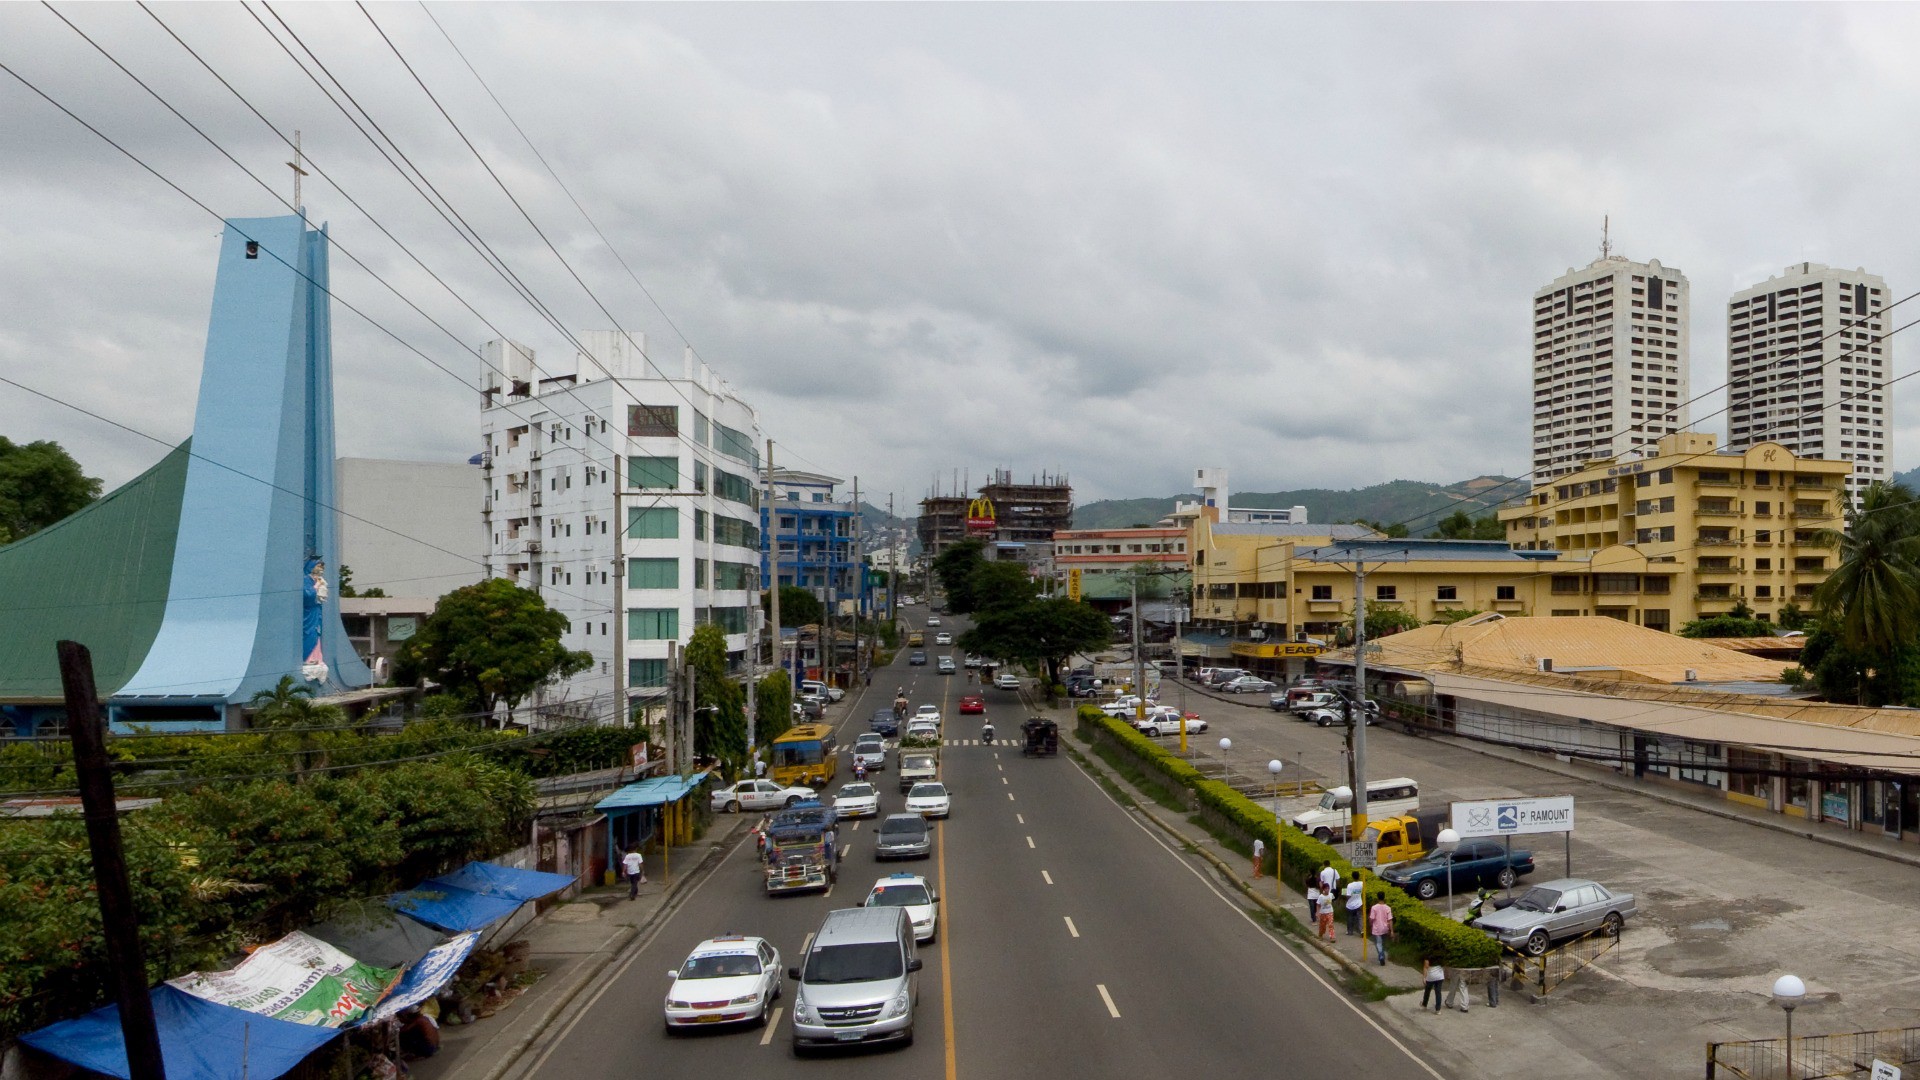 Le ville de Cebu, aux Philippines, accueille le 51e Congrès eucharistique international. (Photo: Flickr/dbgg1979/CC BY 2.0) 